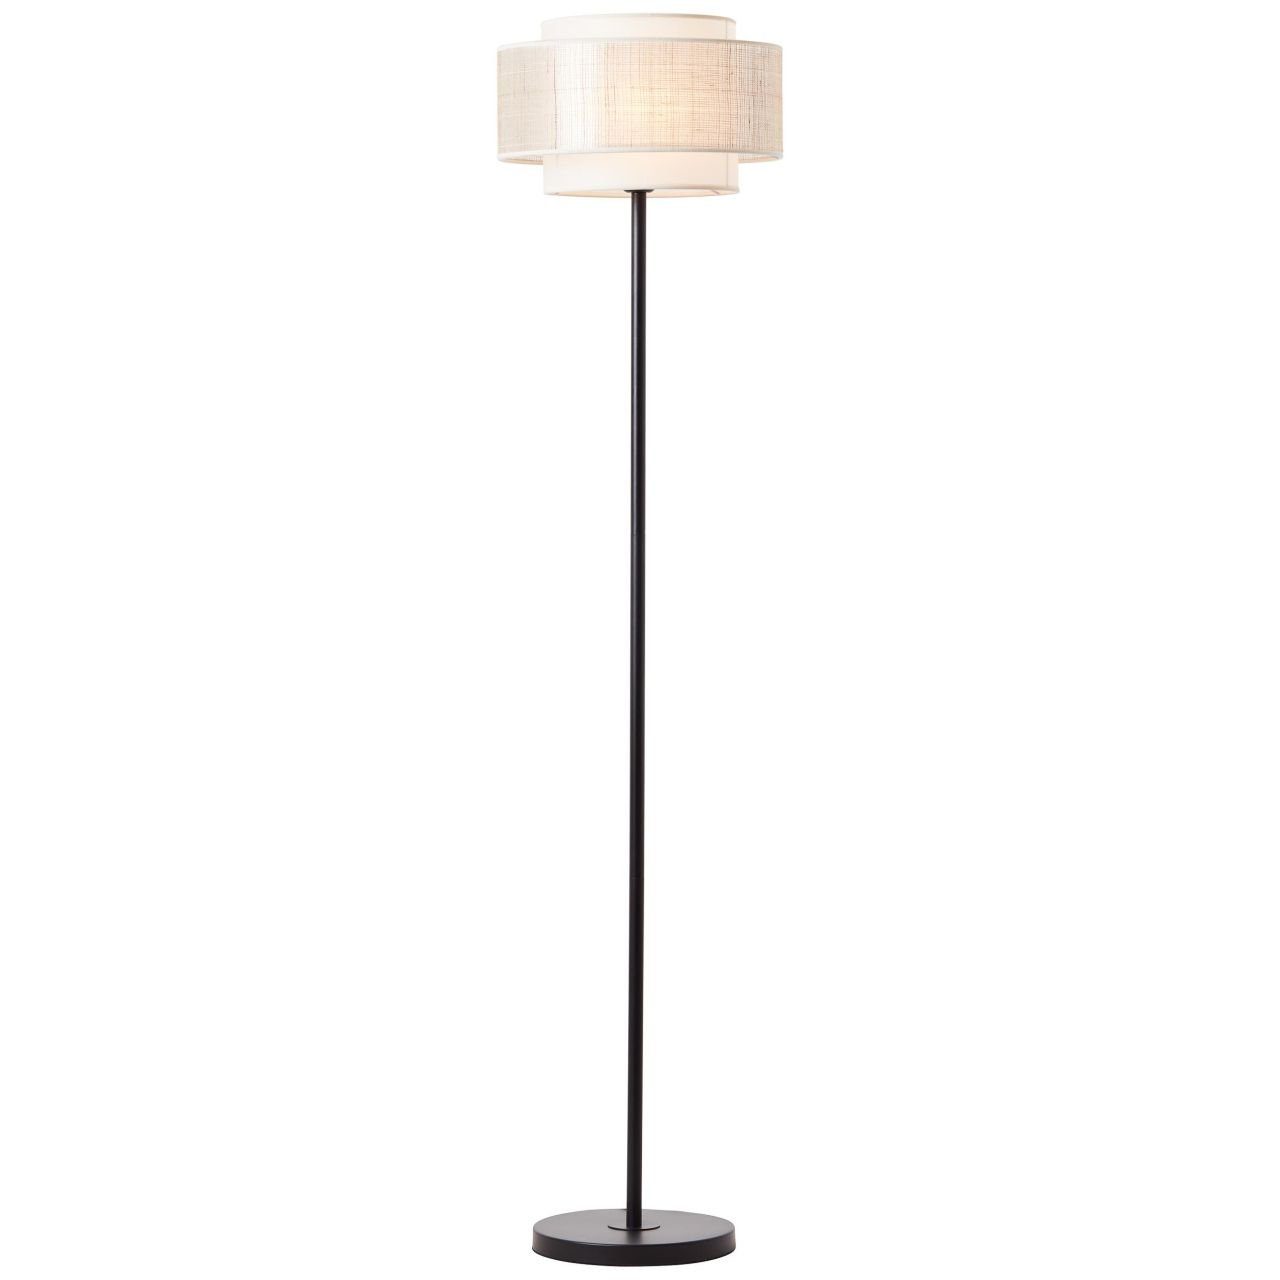 Brilliant Stehlampe Odar, Lampe, Odar Standleuchte 1flg schwarz/beige, 1x A60, E27, 42W, Mit Fuß | Standleuchten